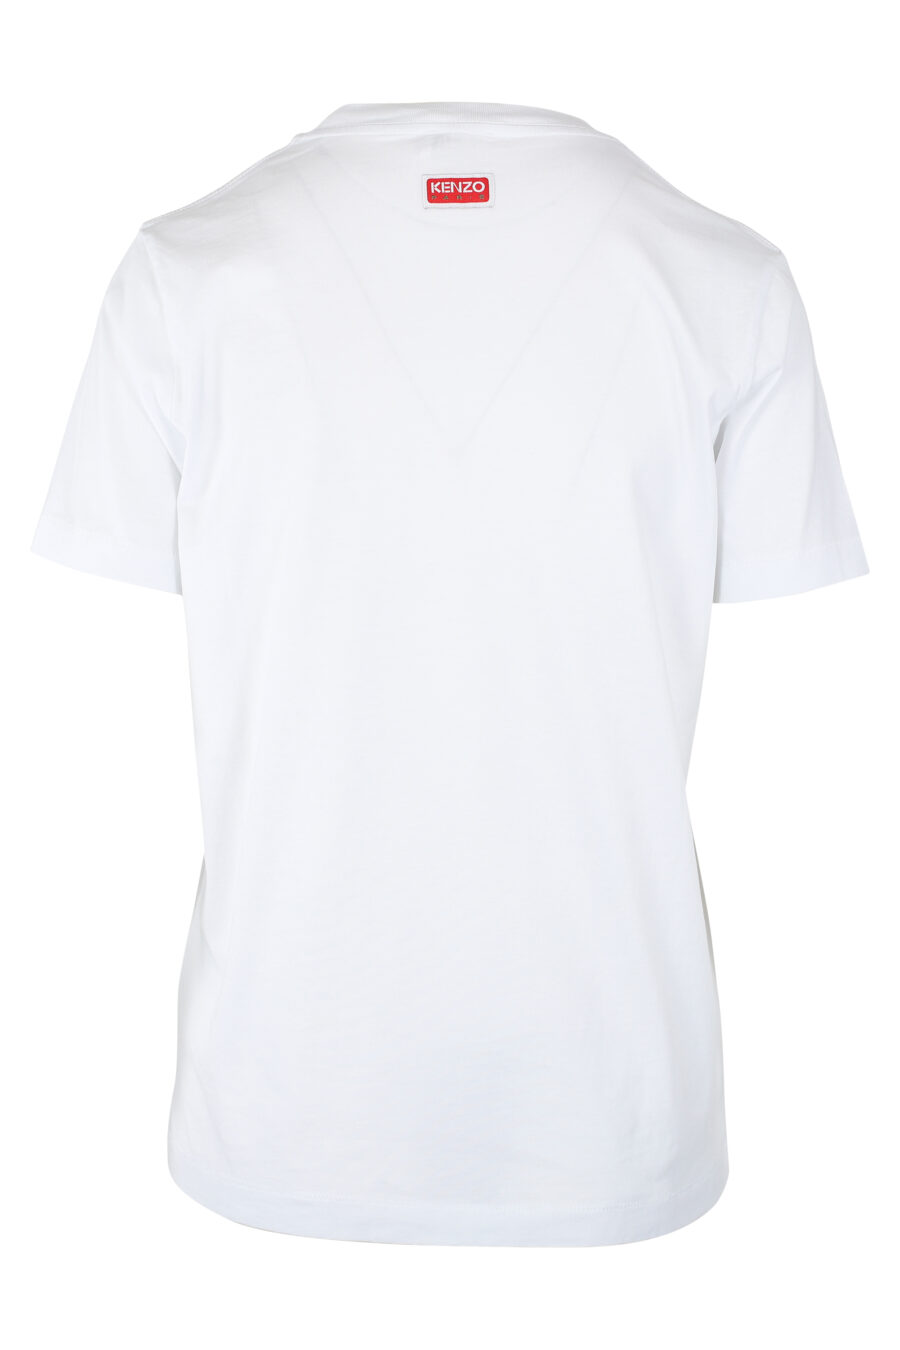 Weißes T-Shirt mit orangefarbenem Blumen-Maxilogo - IMG 9529